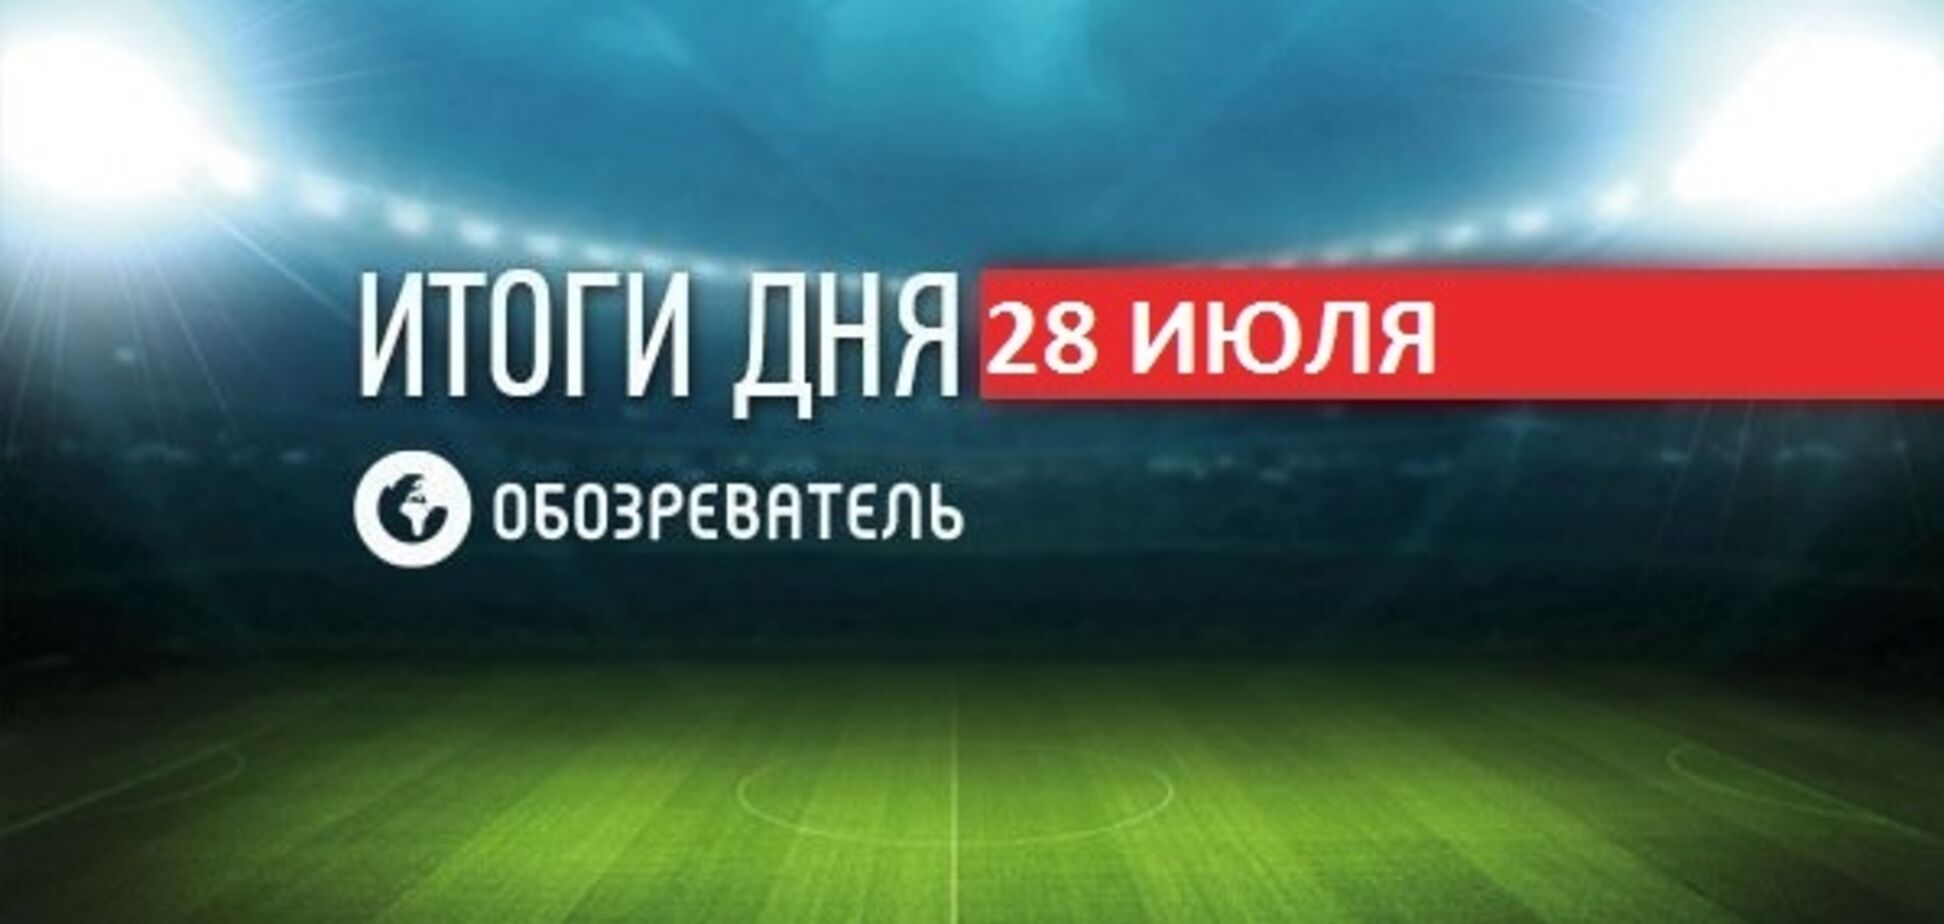 Зеленський засвітився на Суперкубку України: спортивні підсумки 28 липня